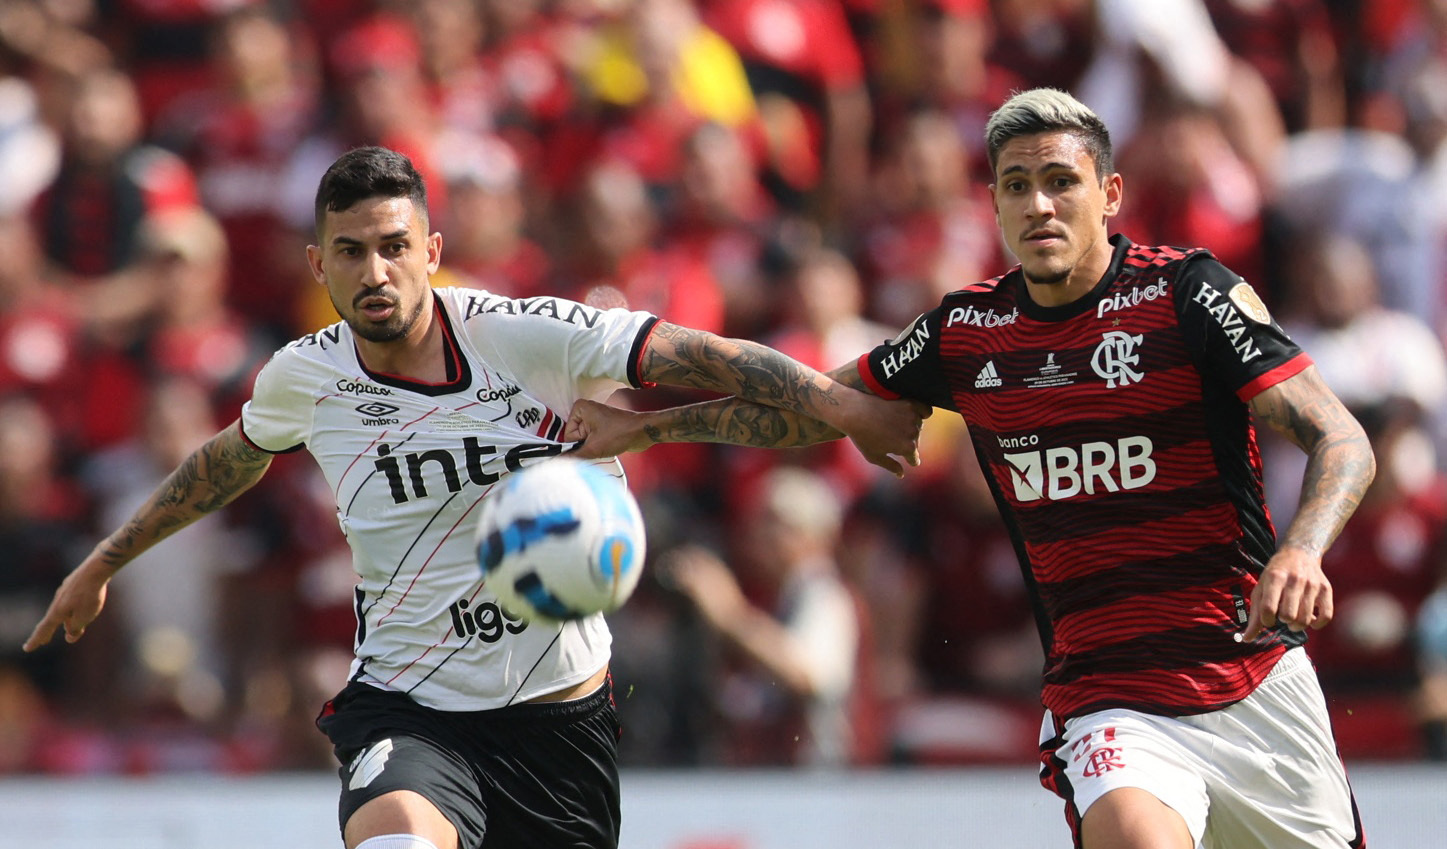 Pedroo disputa el balón con Henrique en la final de la Libertadores entre Flamengo y Athletico Paranaense (REUTERS/Luisa Gonzalez)